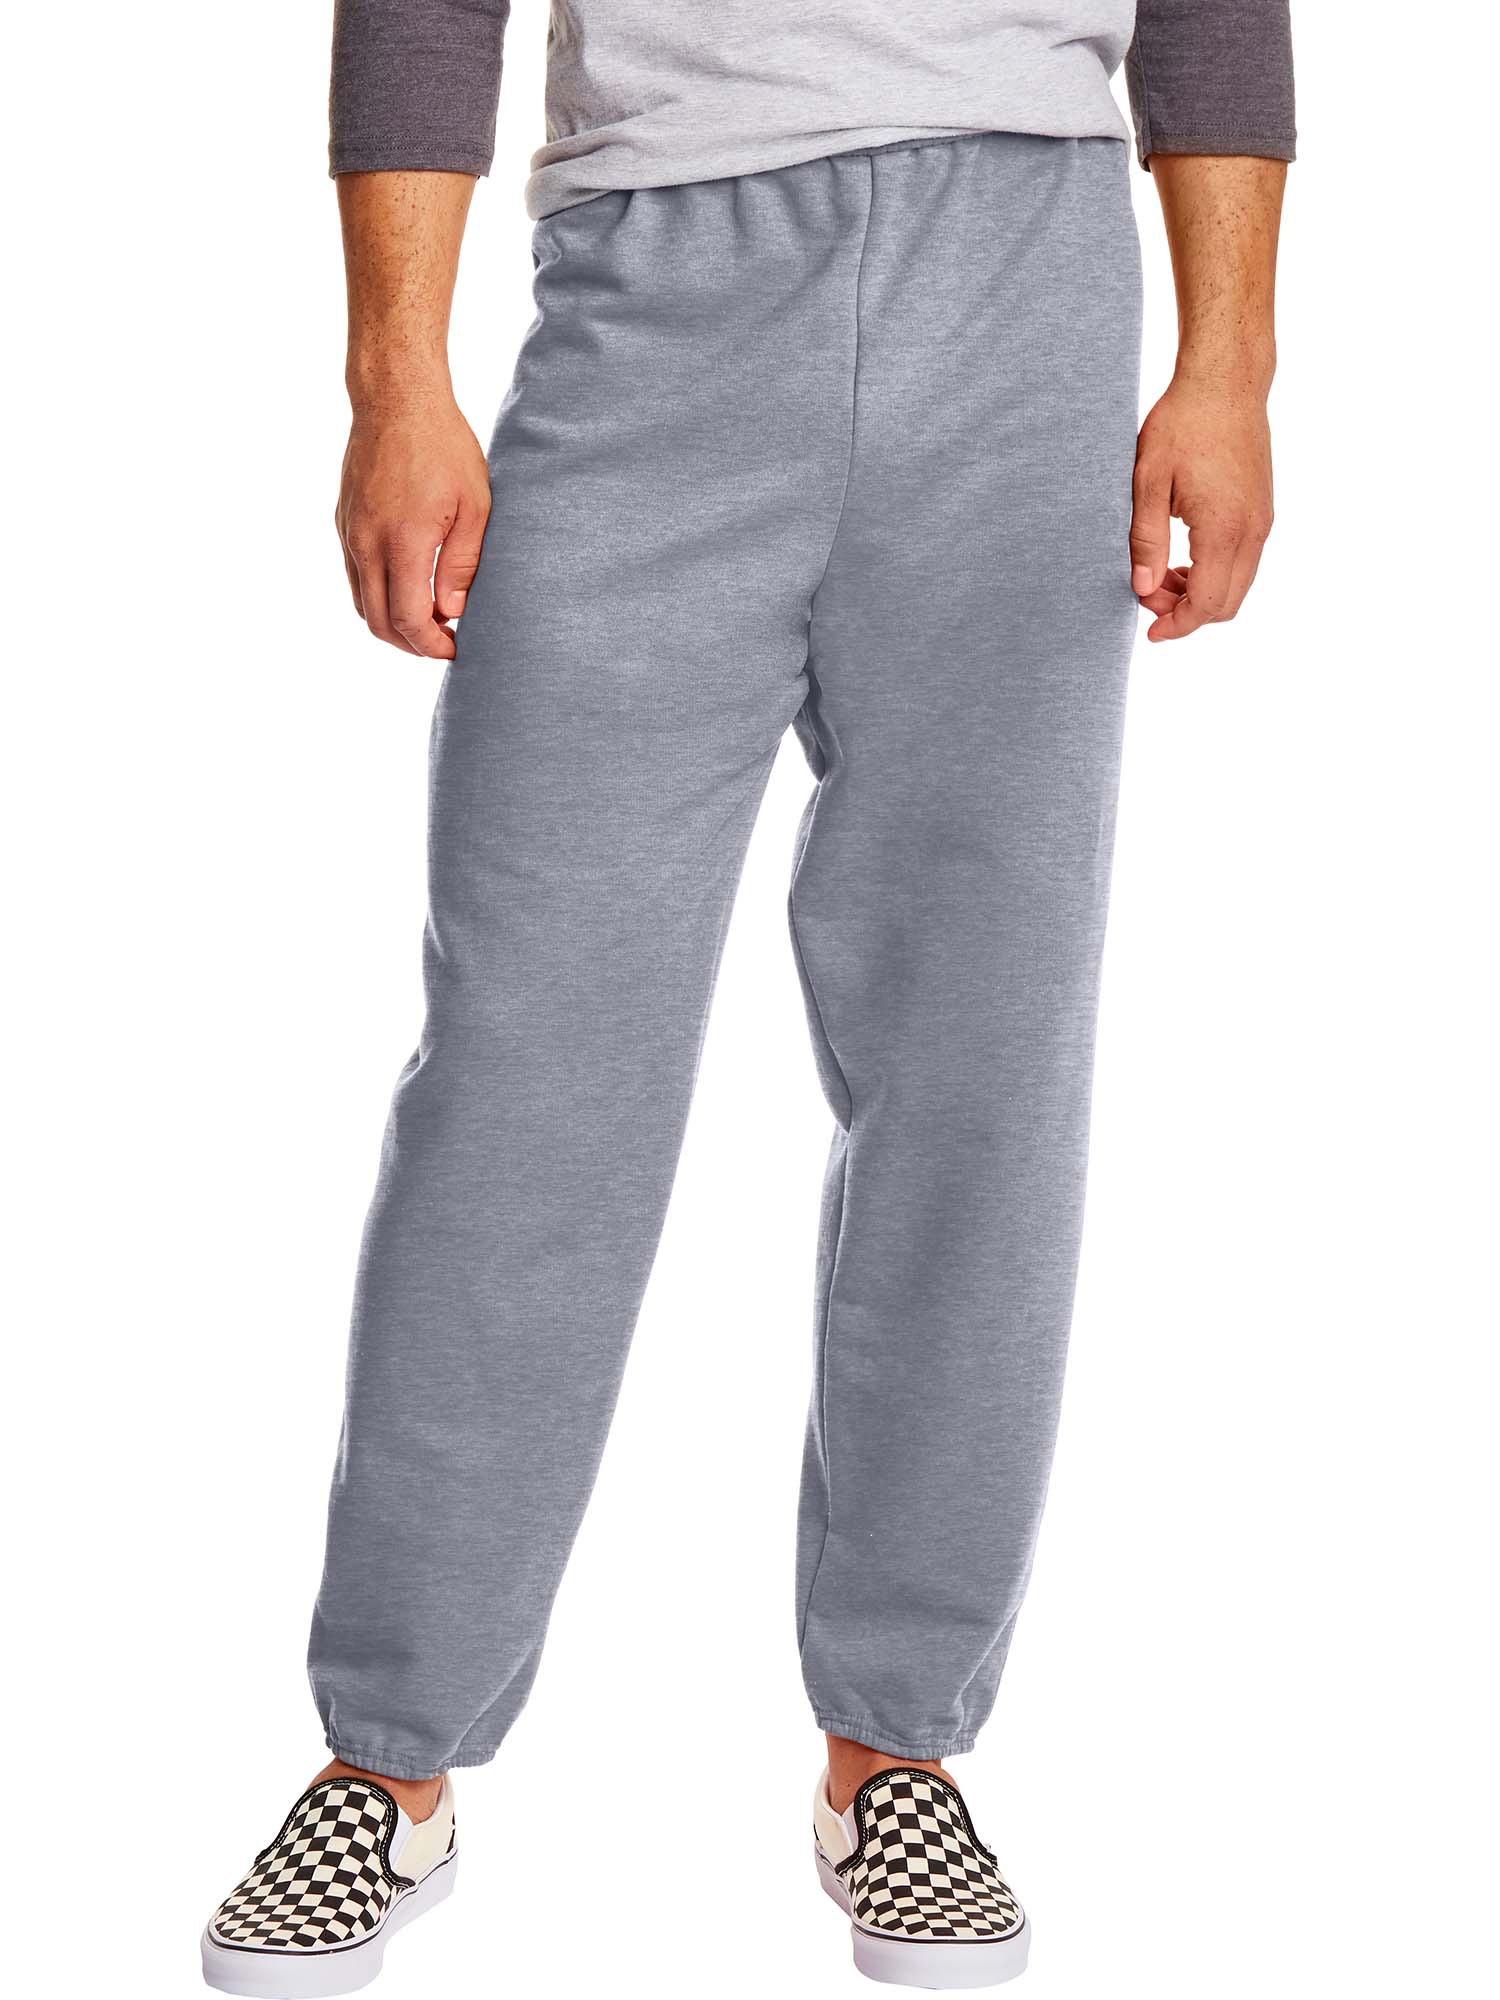 Hanes Men's and Big Men's EcoSmart Fleece Sweatpants, Sizes S-3XL - image 1 of 7